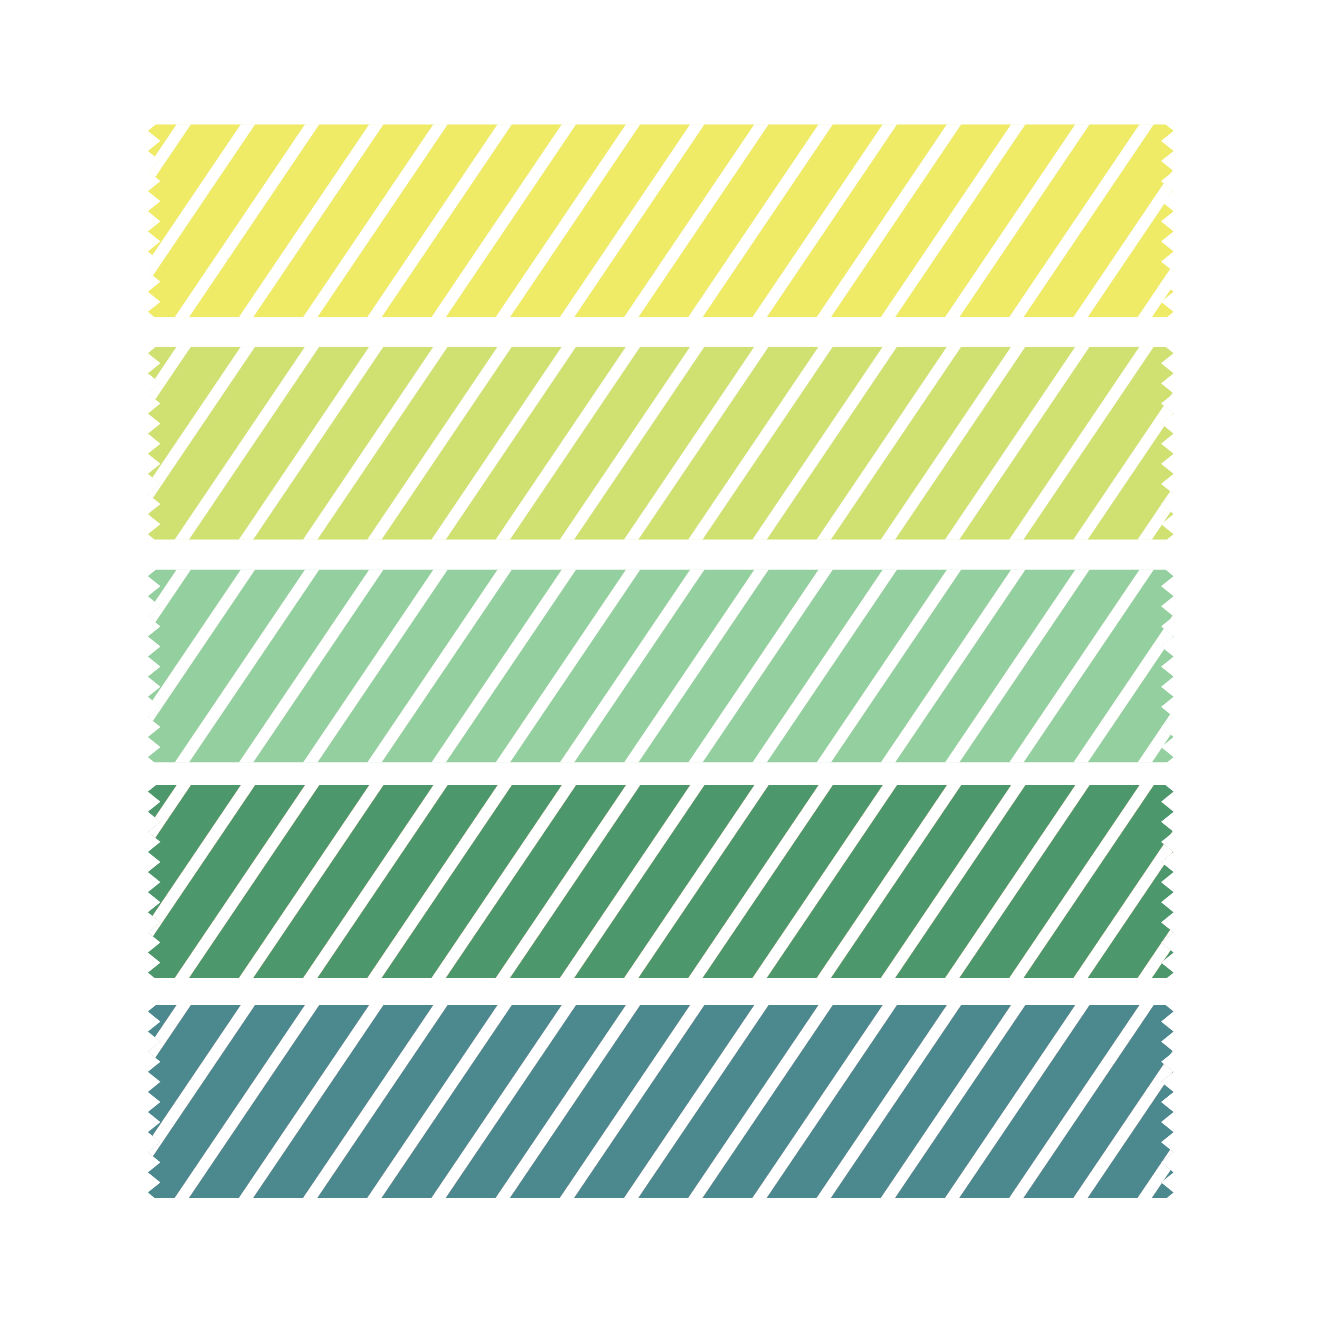 マスキングテープ ストライプ柄デザイン 緑系 イラスト 商用フリー